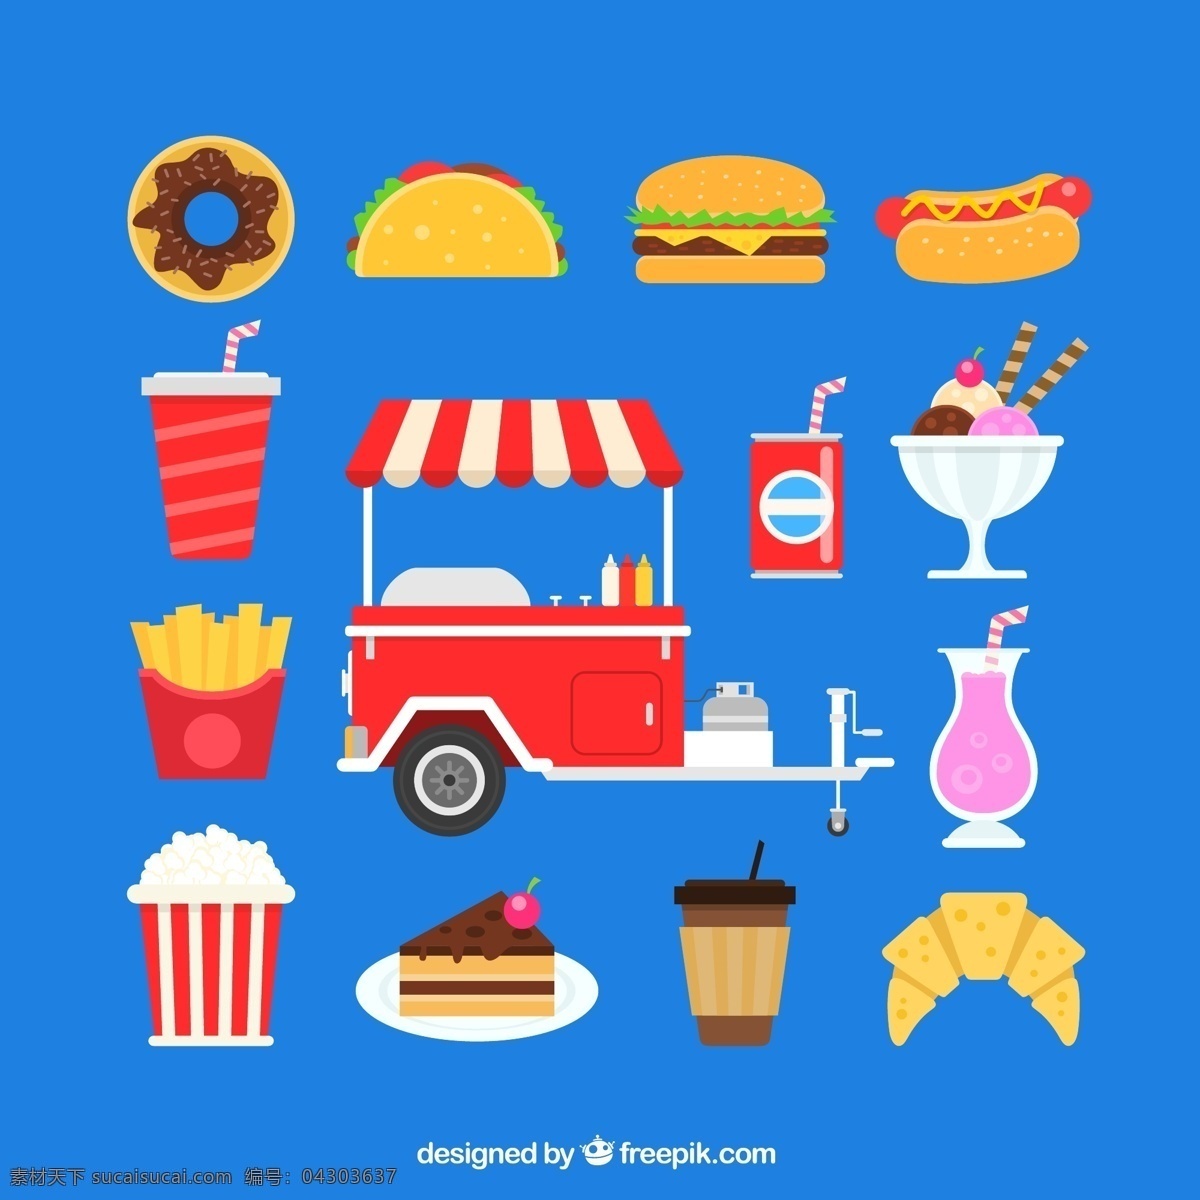 矢量 移动 餐车 食物 矢量移动餐车 矢量汉堡包 糕点 食品 图标 图示 图形 矢量趣多多 生活百科 餐饮美食